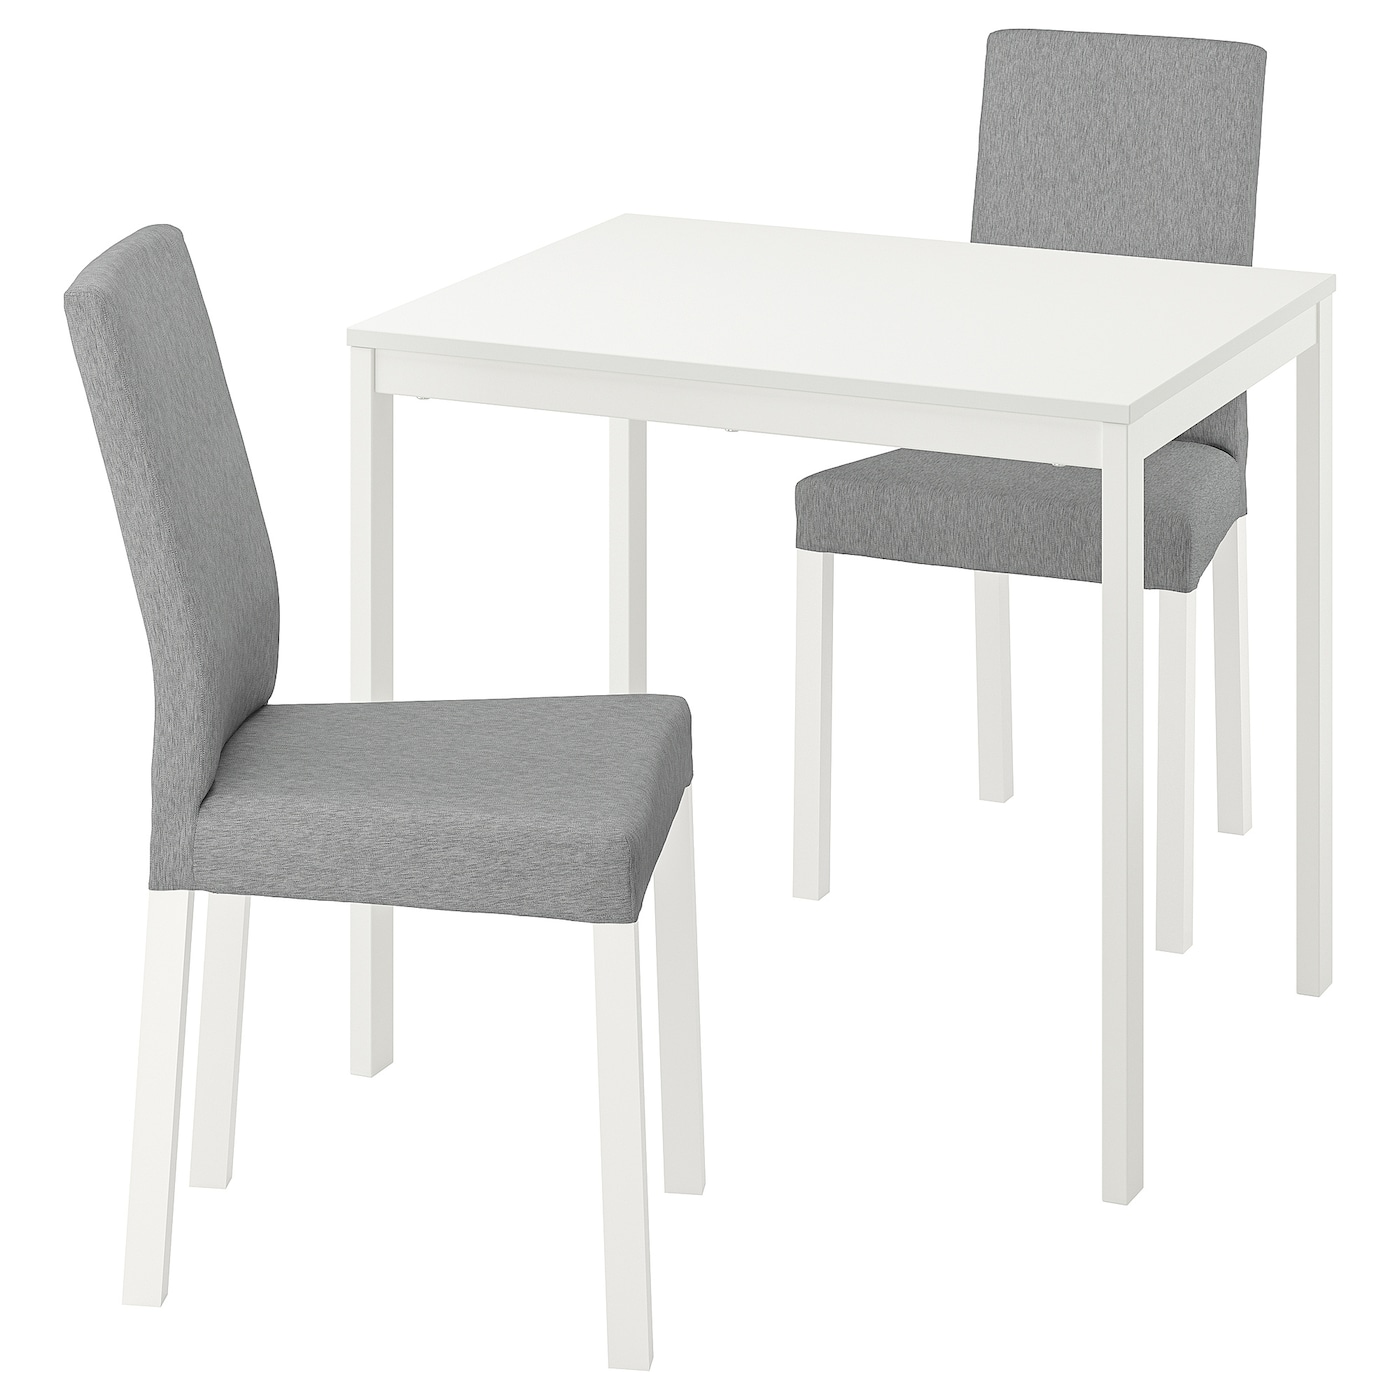 VANGSTA / KÄTTIL Tisch und 2 Stühle  -  - Möbel Ideen für dein Zuhause von Home Trends. Möbel Trends von Social Media Influencer für dein Skandi Zuhause.